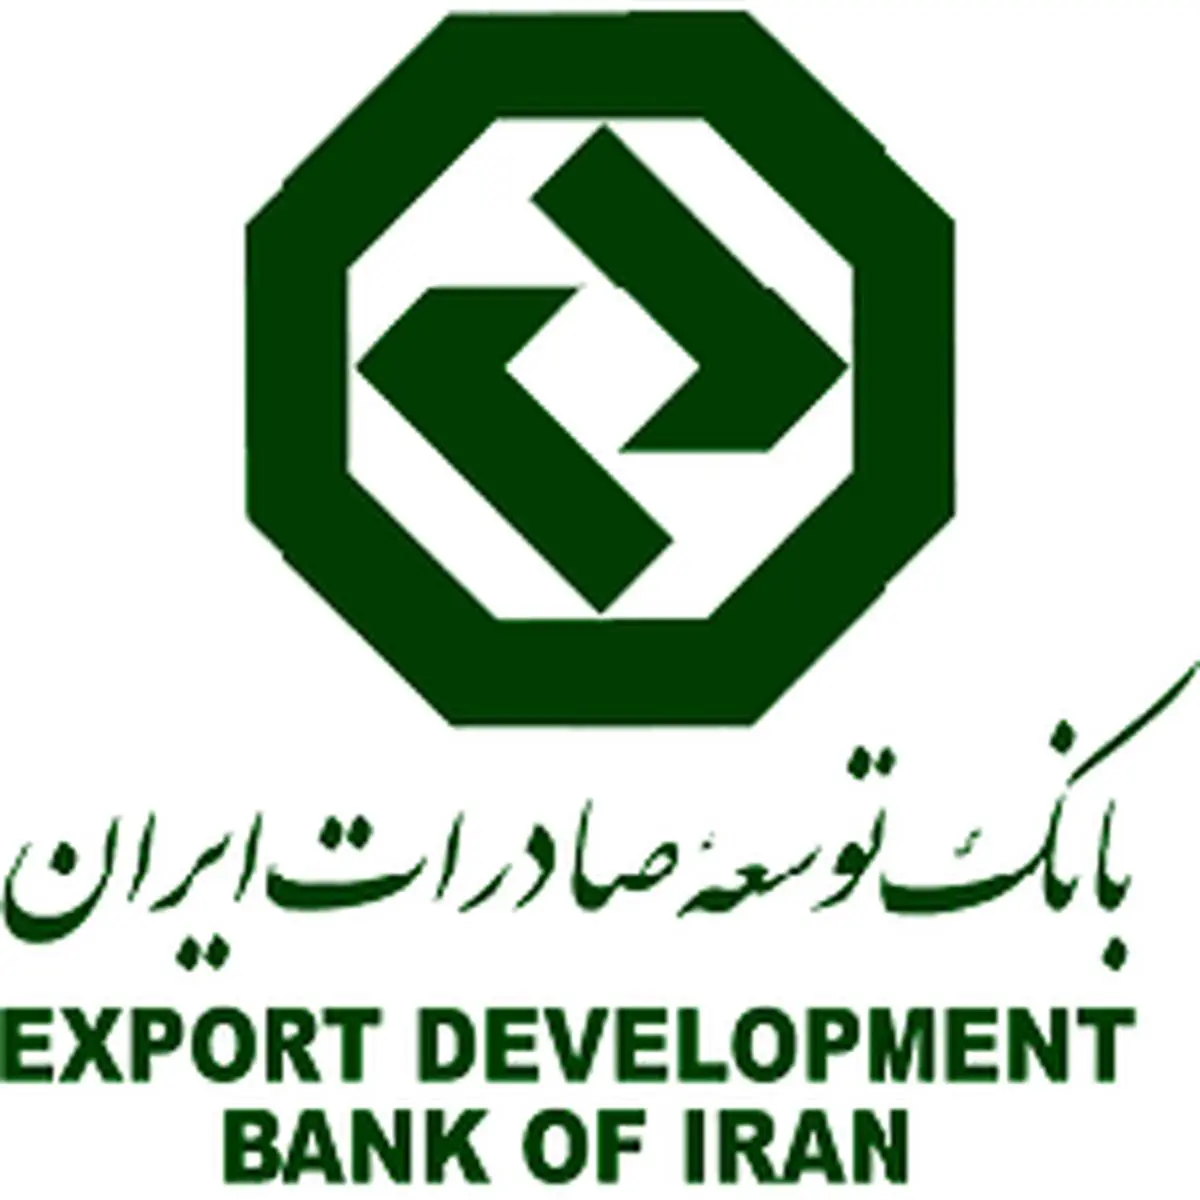 کمک مالی بانک توسعه صادرات ایران به سیل زدگان سیستان و بلوچستان

